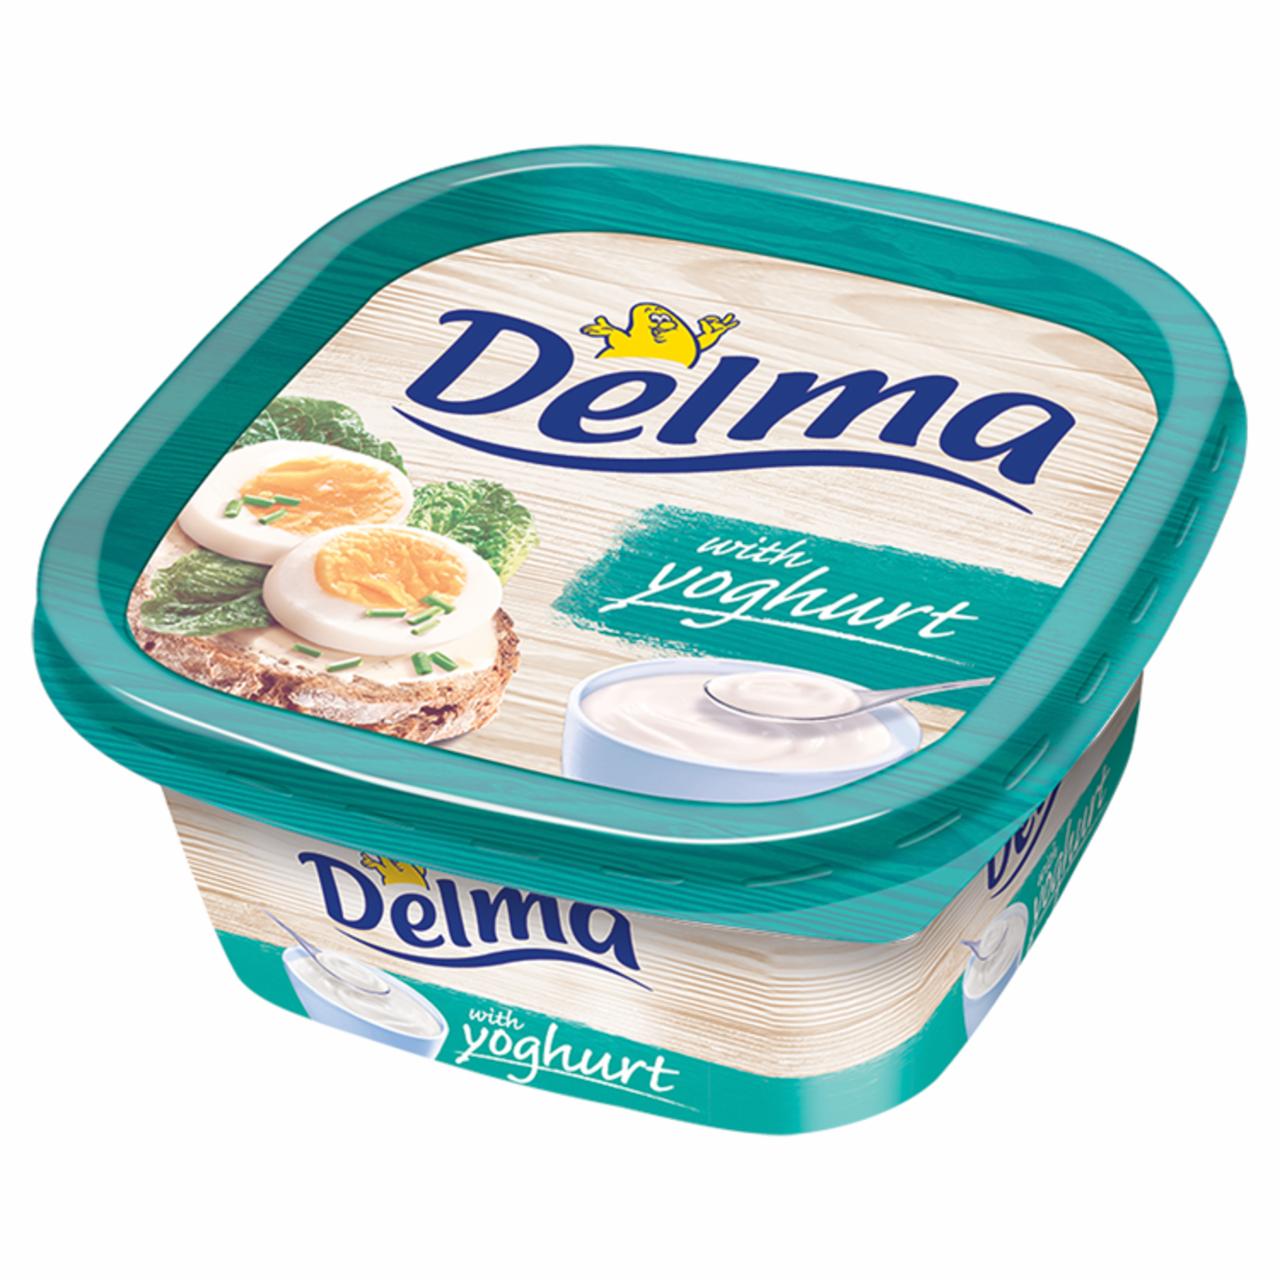 Képek - Delma with Yoghurt light csészés margarin 500 g